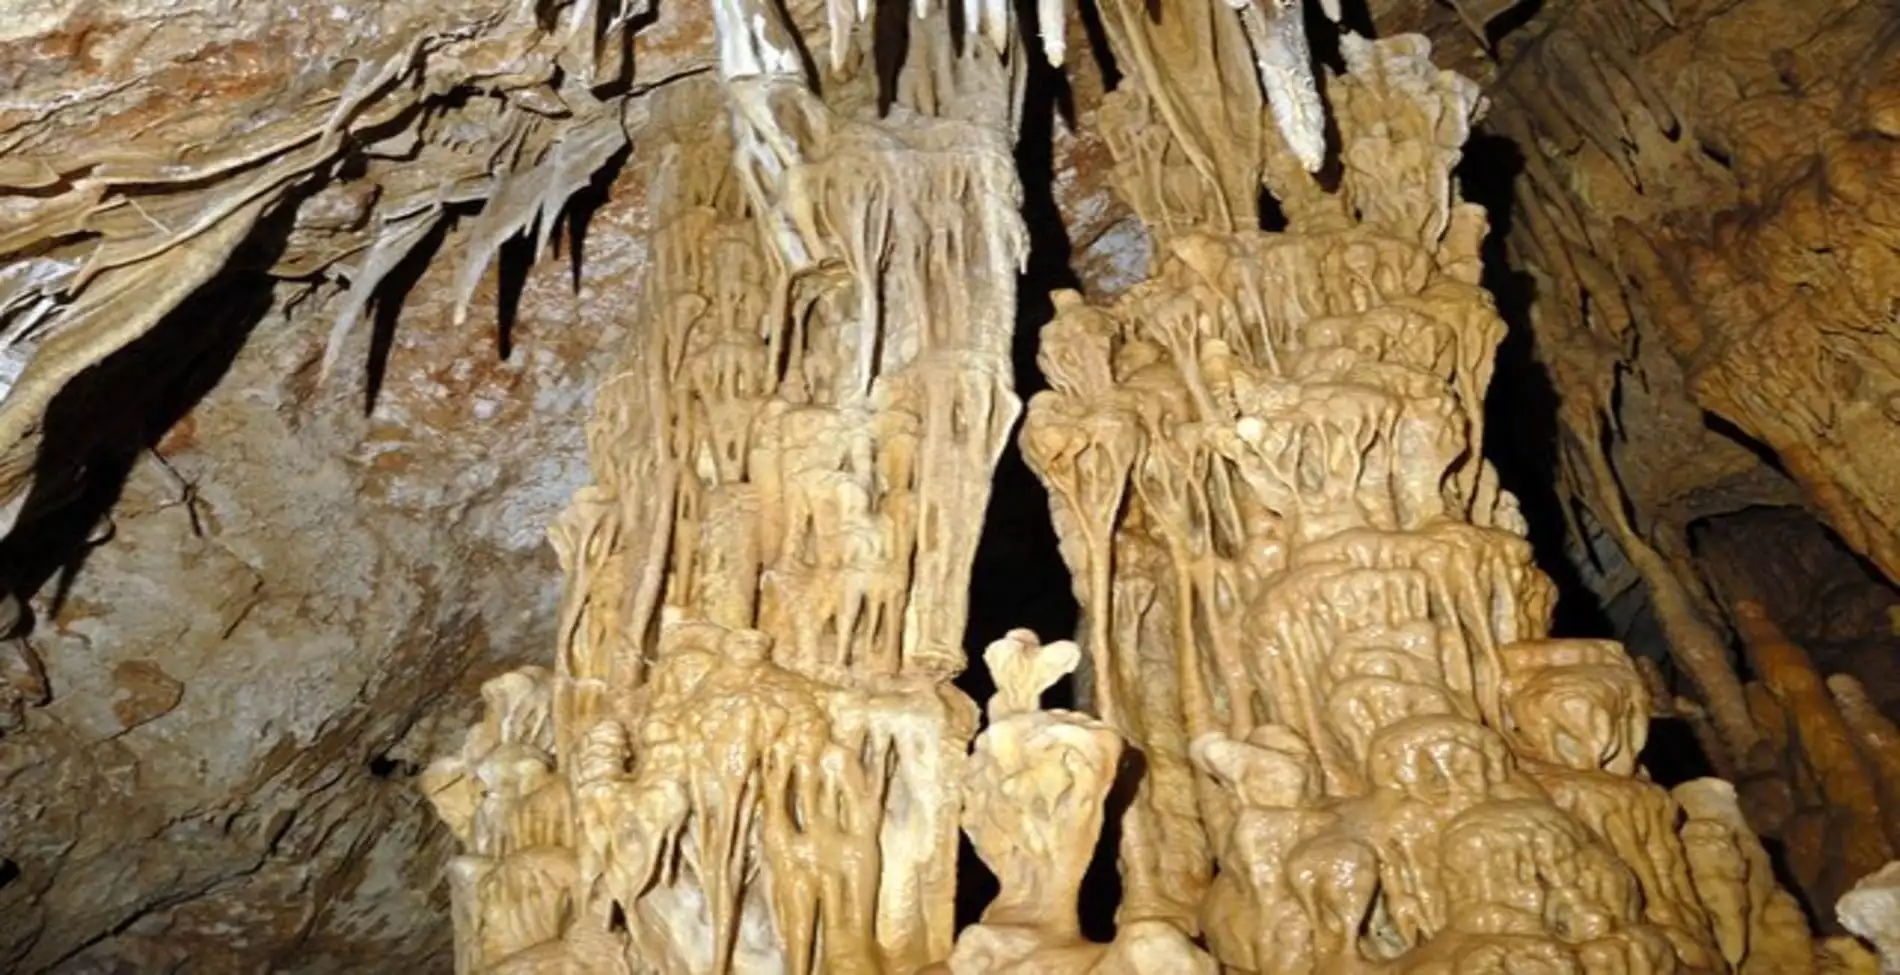 Το εντυπωσιακό σπήλαιο στην Αττική που ανακαλύφθηκε από δύο μαθητές1